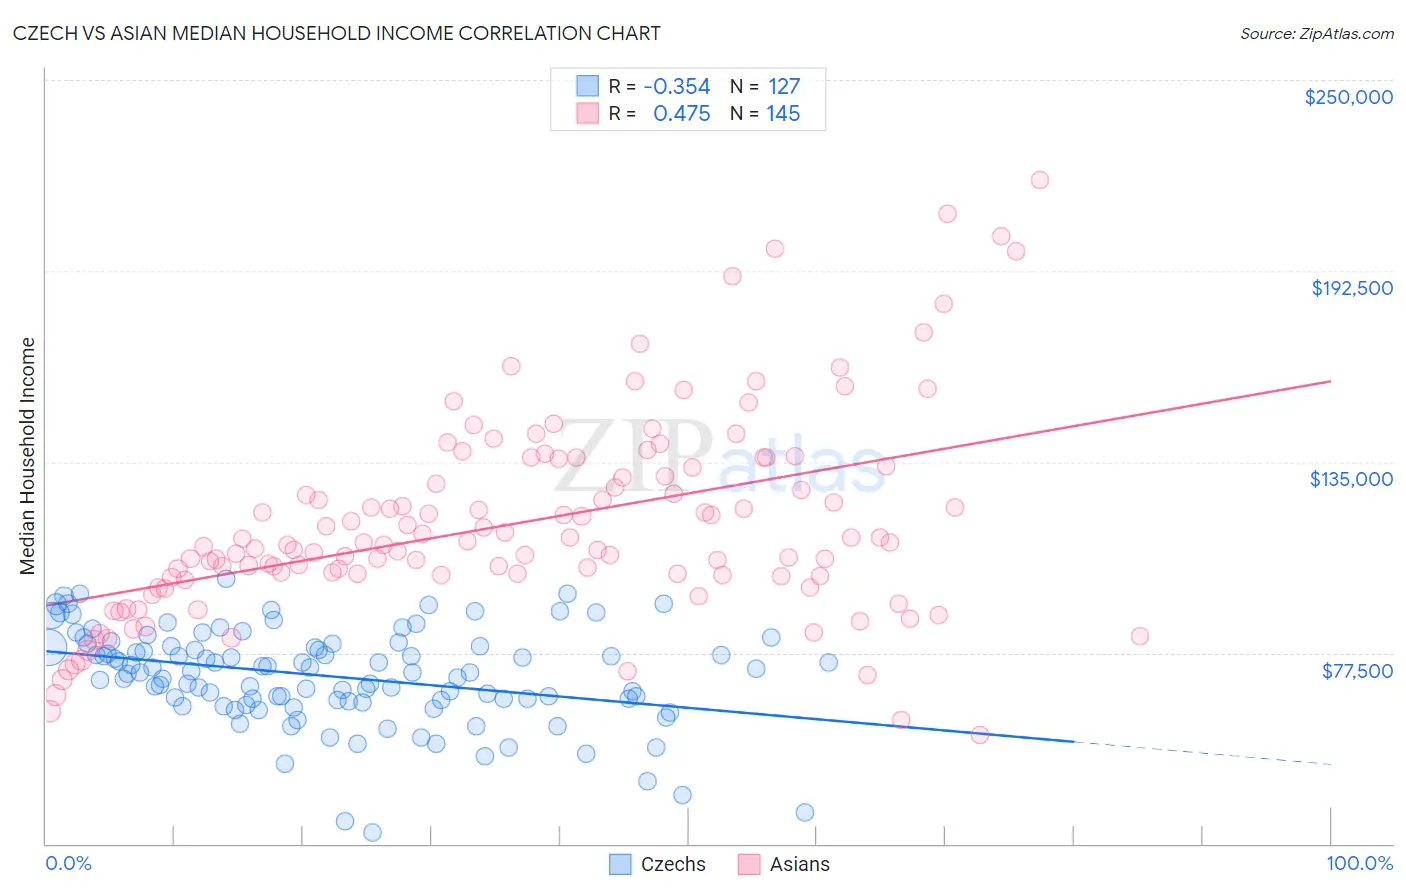 Czech vs Asian Median Household Income